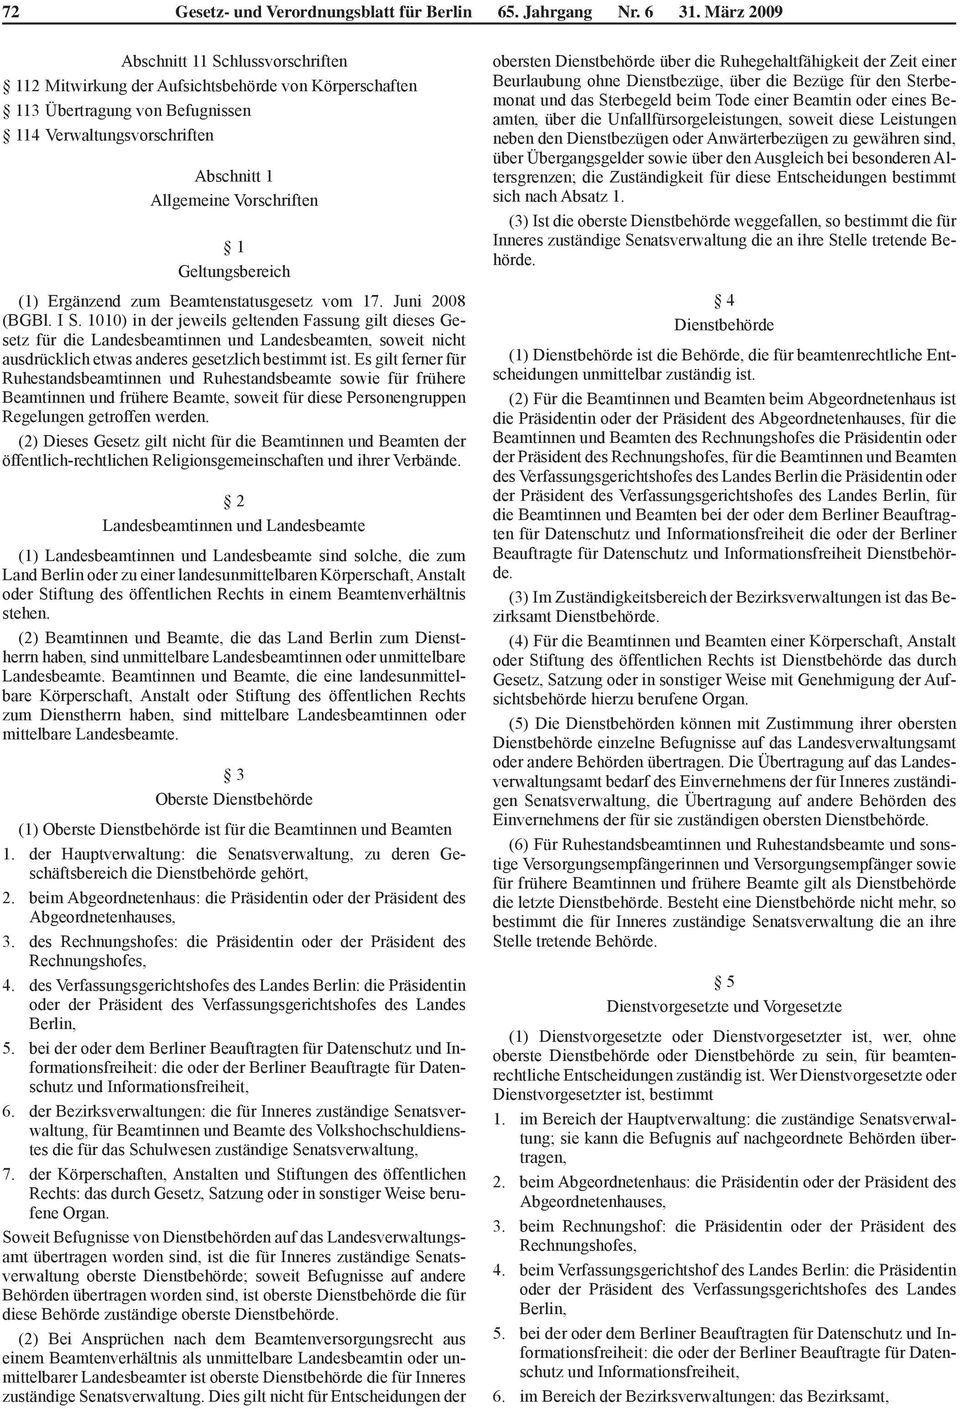 Geltungsbereich (1) Ergänzend zum Beamtenstatusgesetz vom 17. Juni 2008 (BGBl. I S.